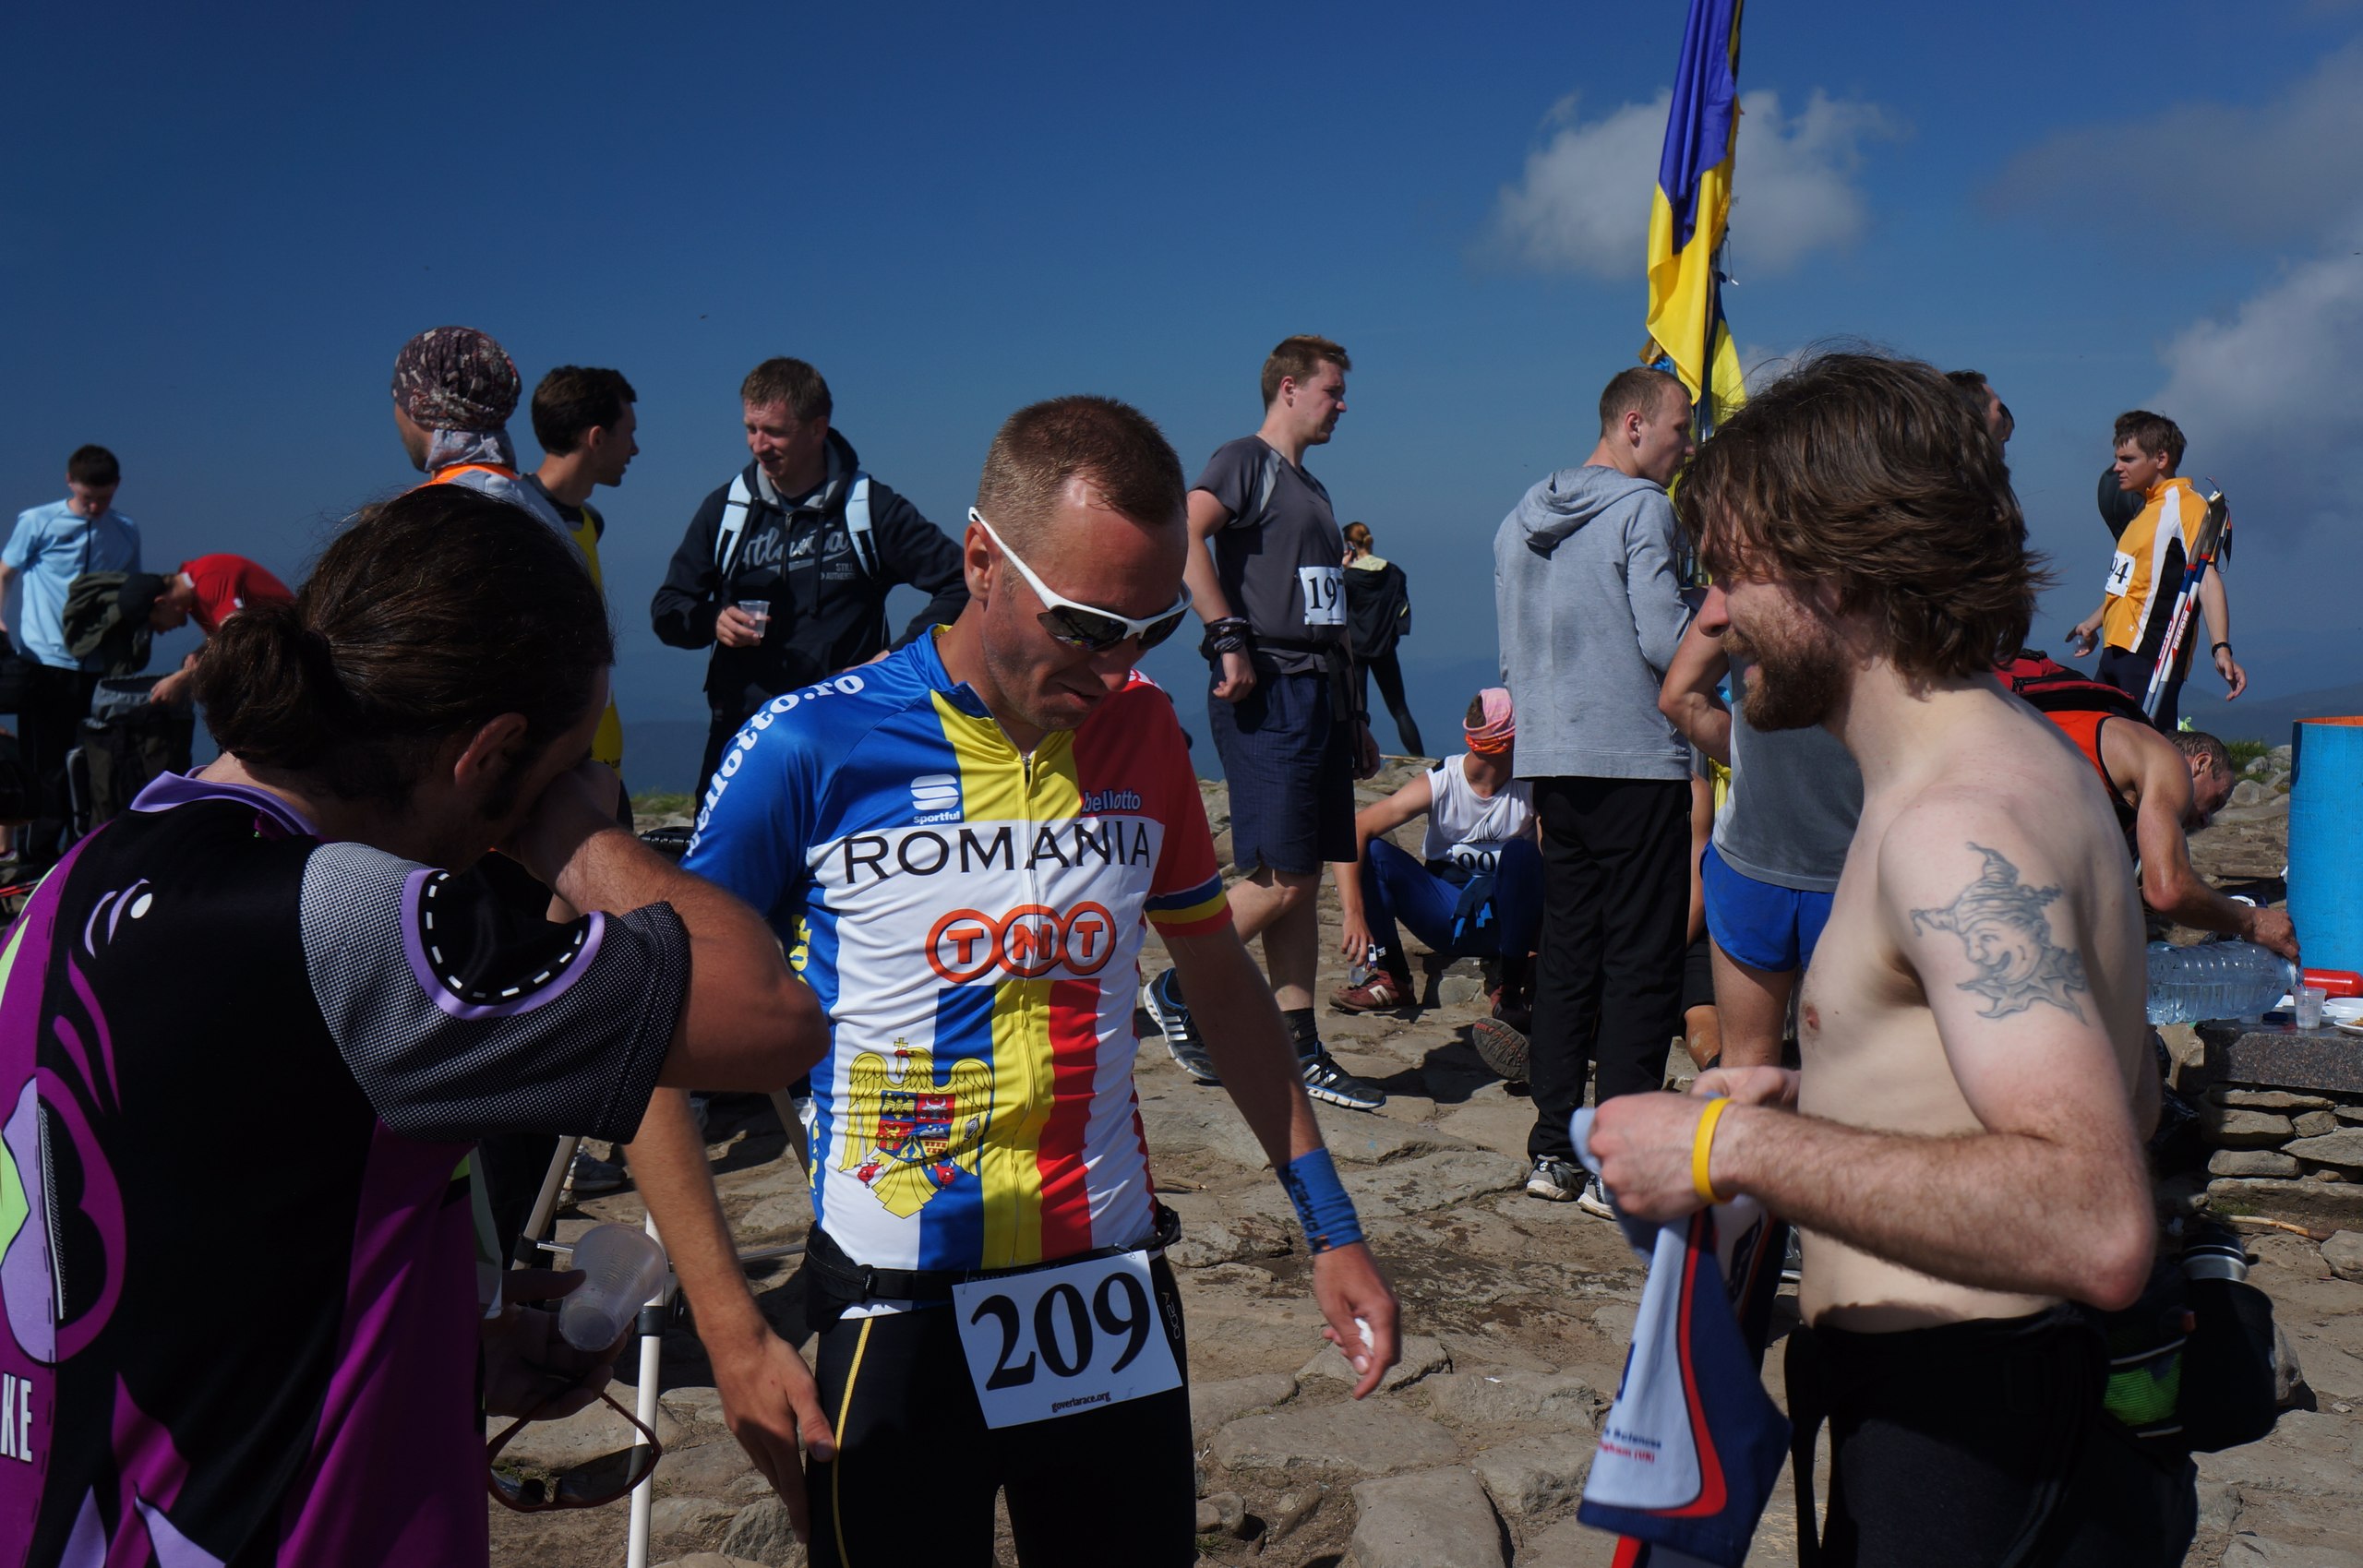 Goverla Race 2014: Ежегодный забег на высшую точку Украины - гору Говерла (+ФОТО)